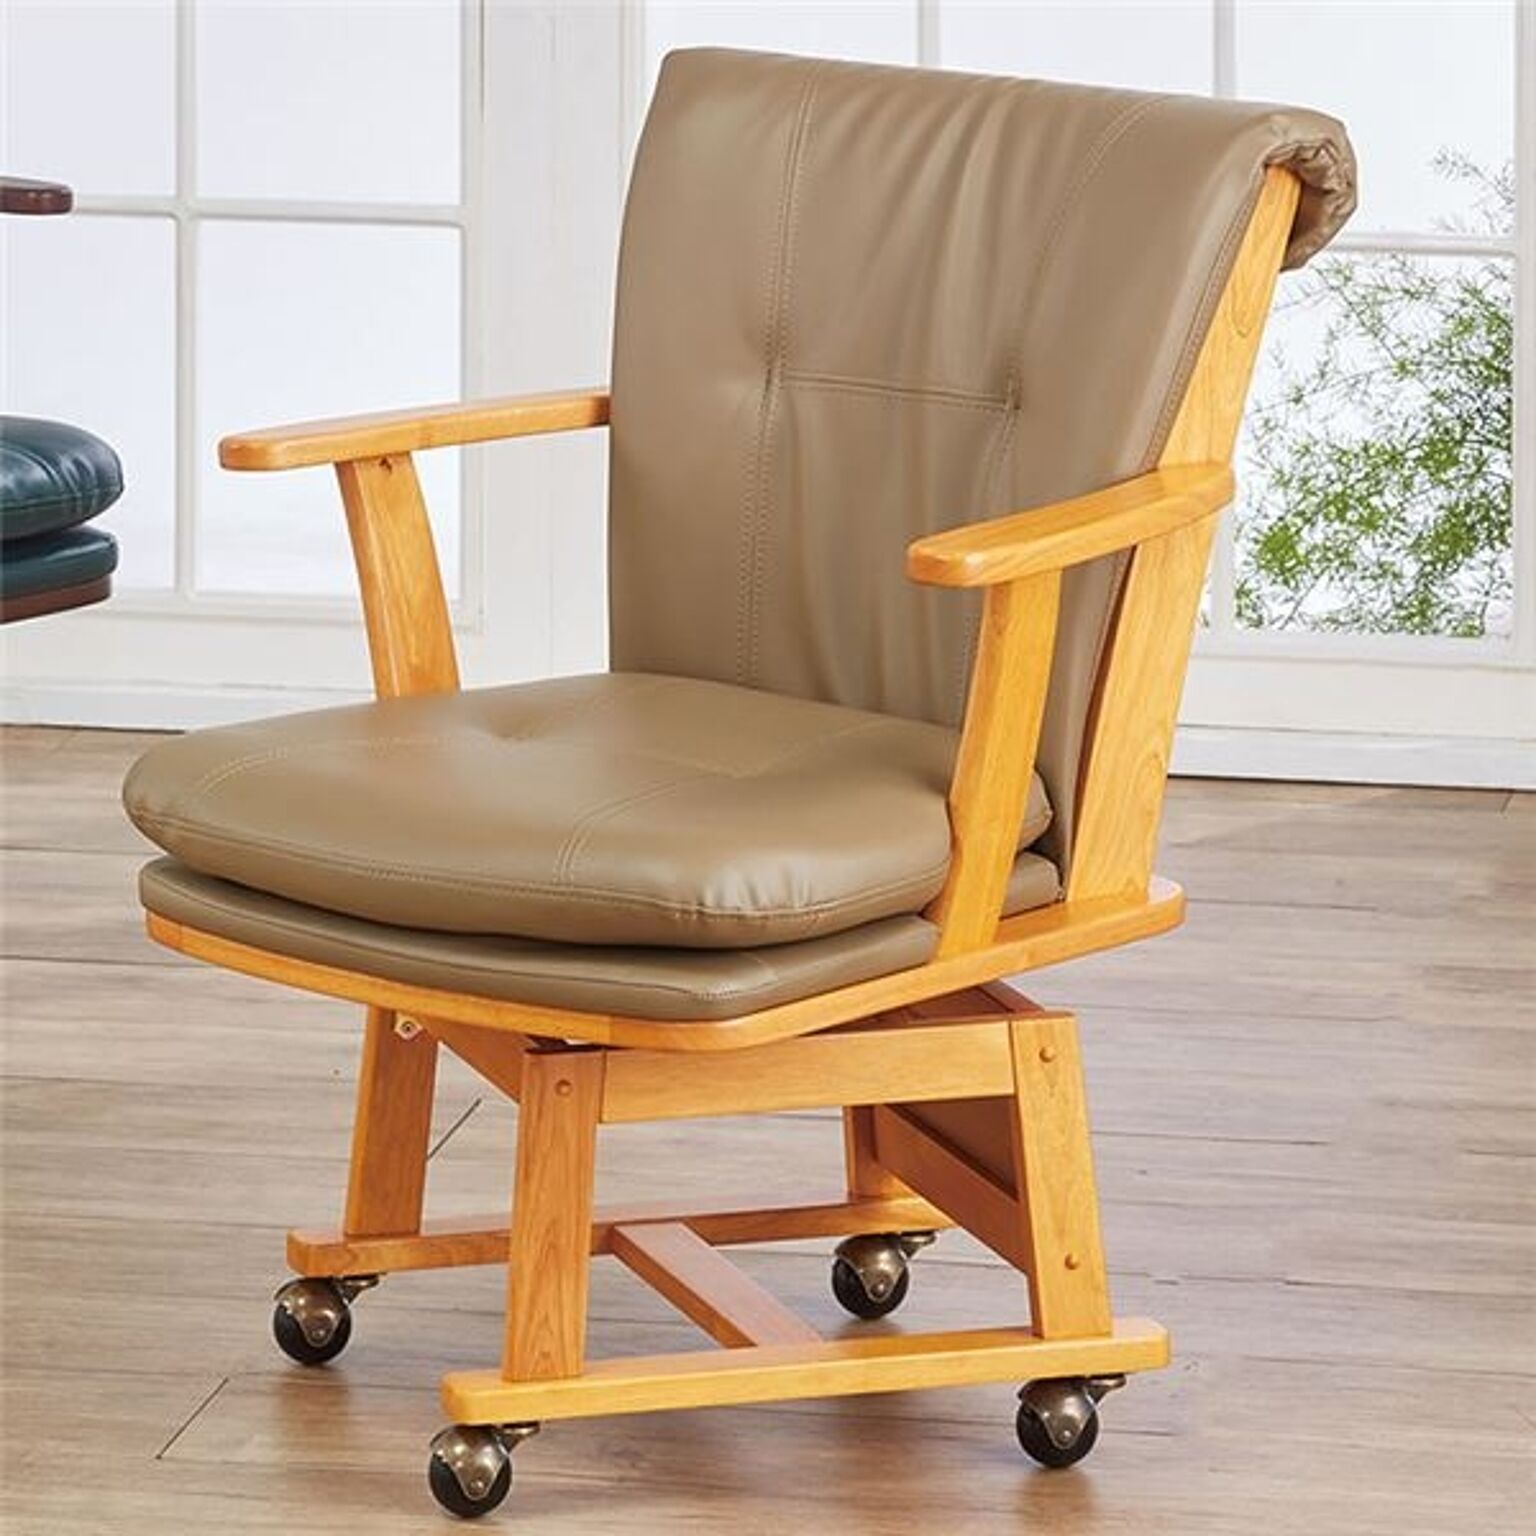 回転ダイニングチェア/食卓椅子 【キャスター付 ナチュラル】 約幅62.5cm 木製 合皮 座り心地のよいボリュームチェア 組立品